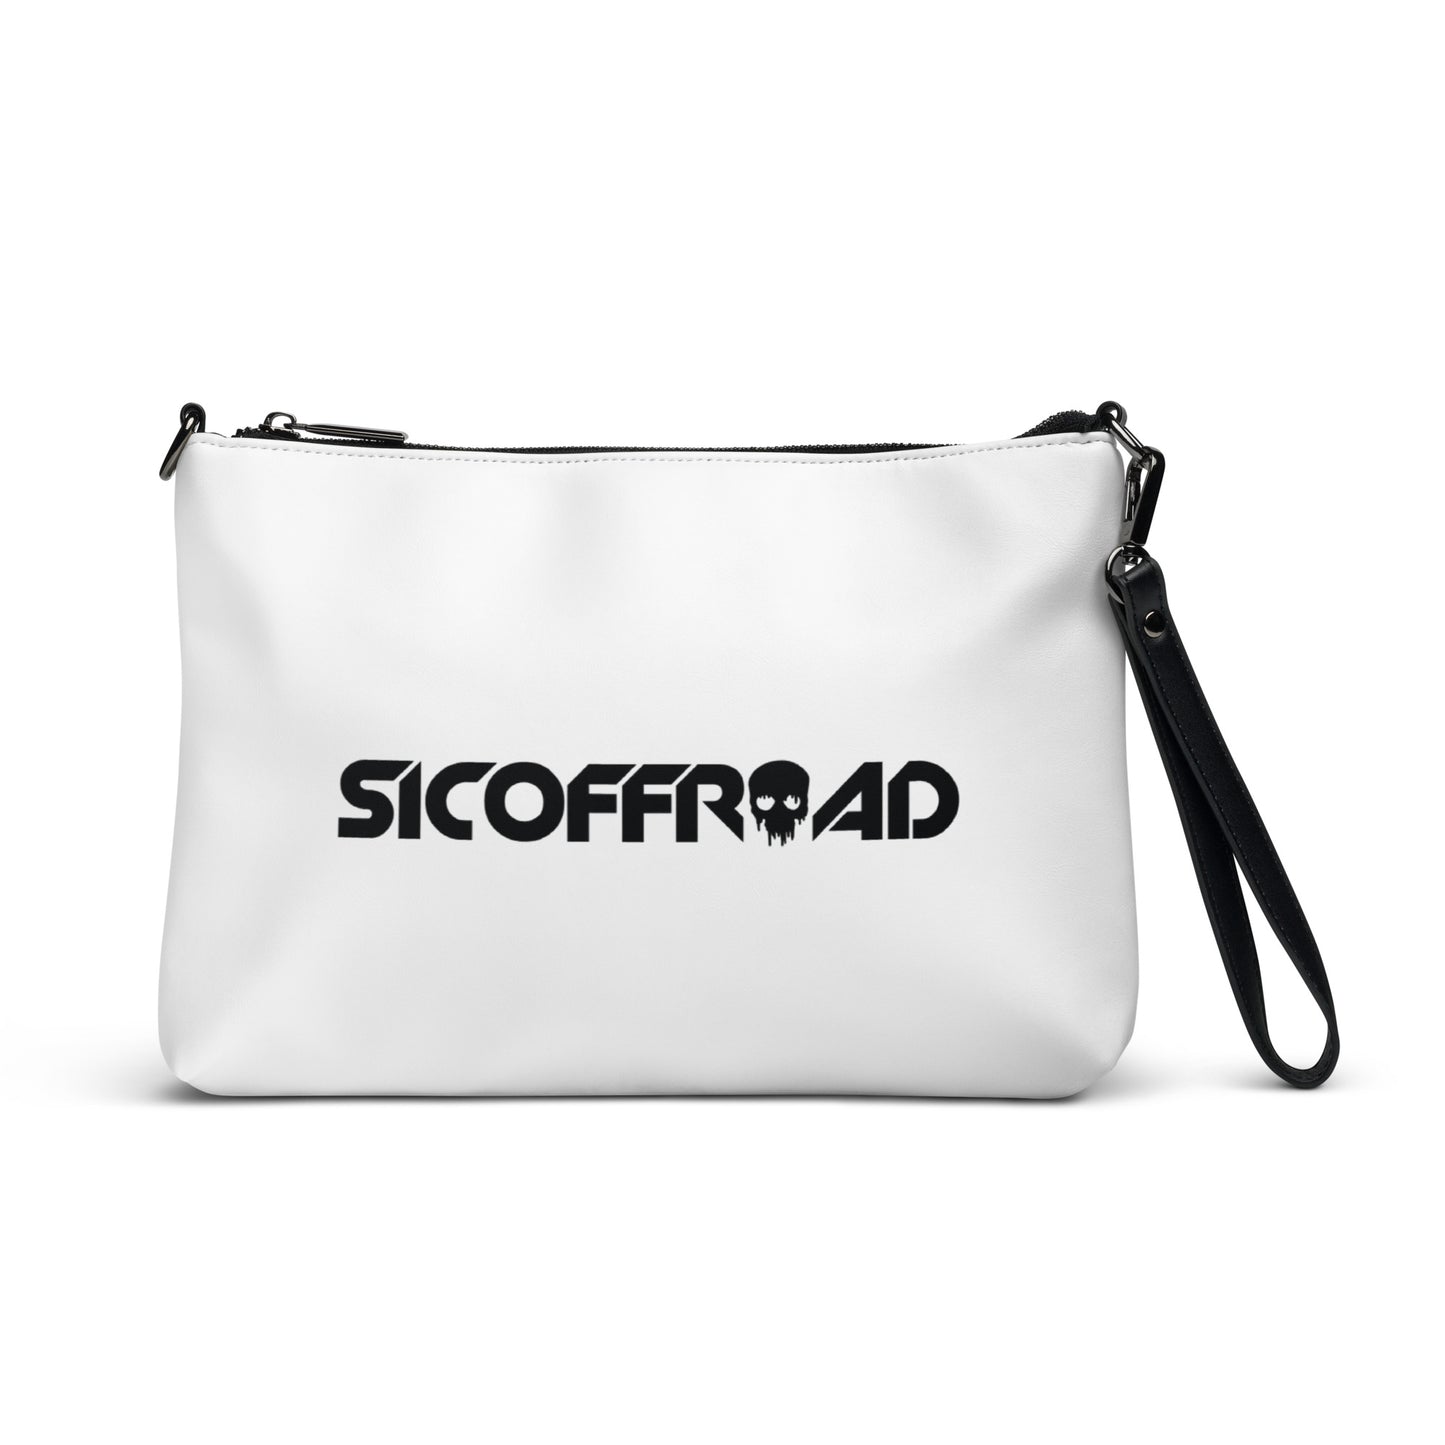 Sicoffroad Crossbody Bag